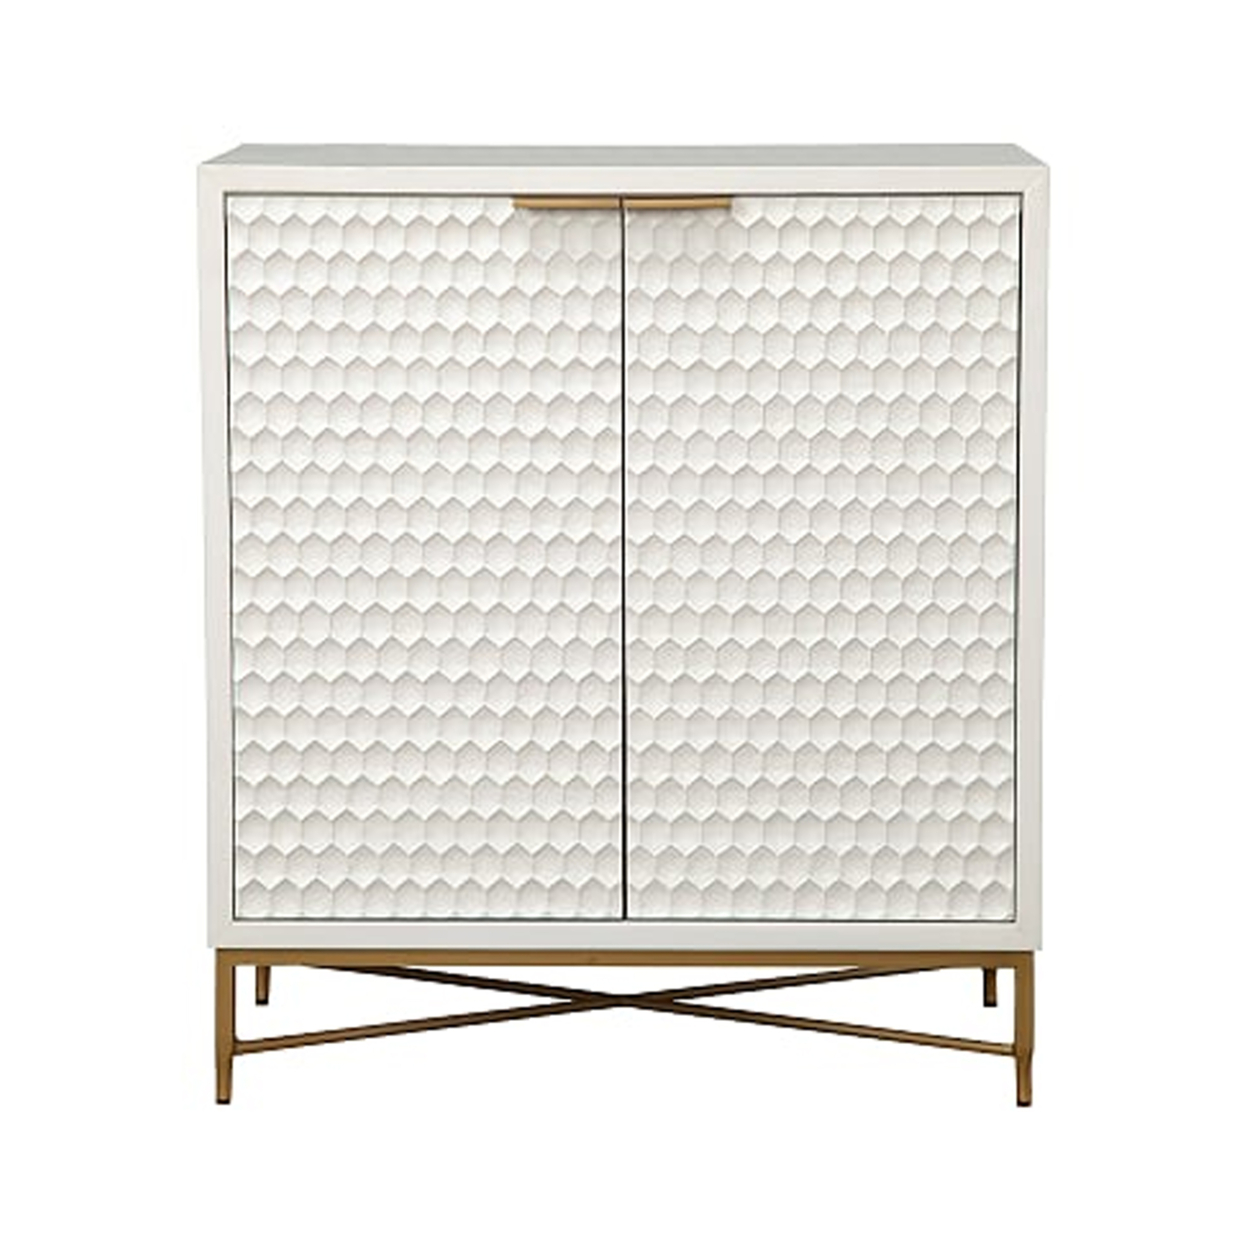 Honeycomb Design 2 Door Bar Cabinet With Metal Legs, White- Saltoro Sherpi